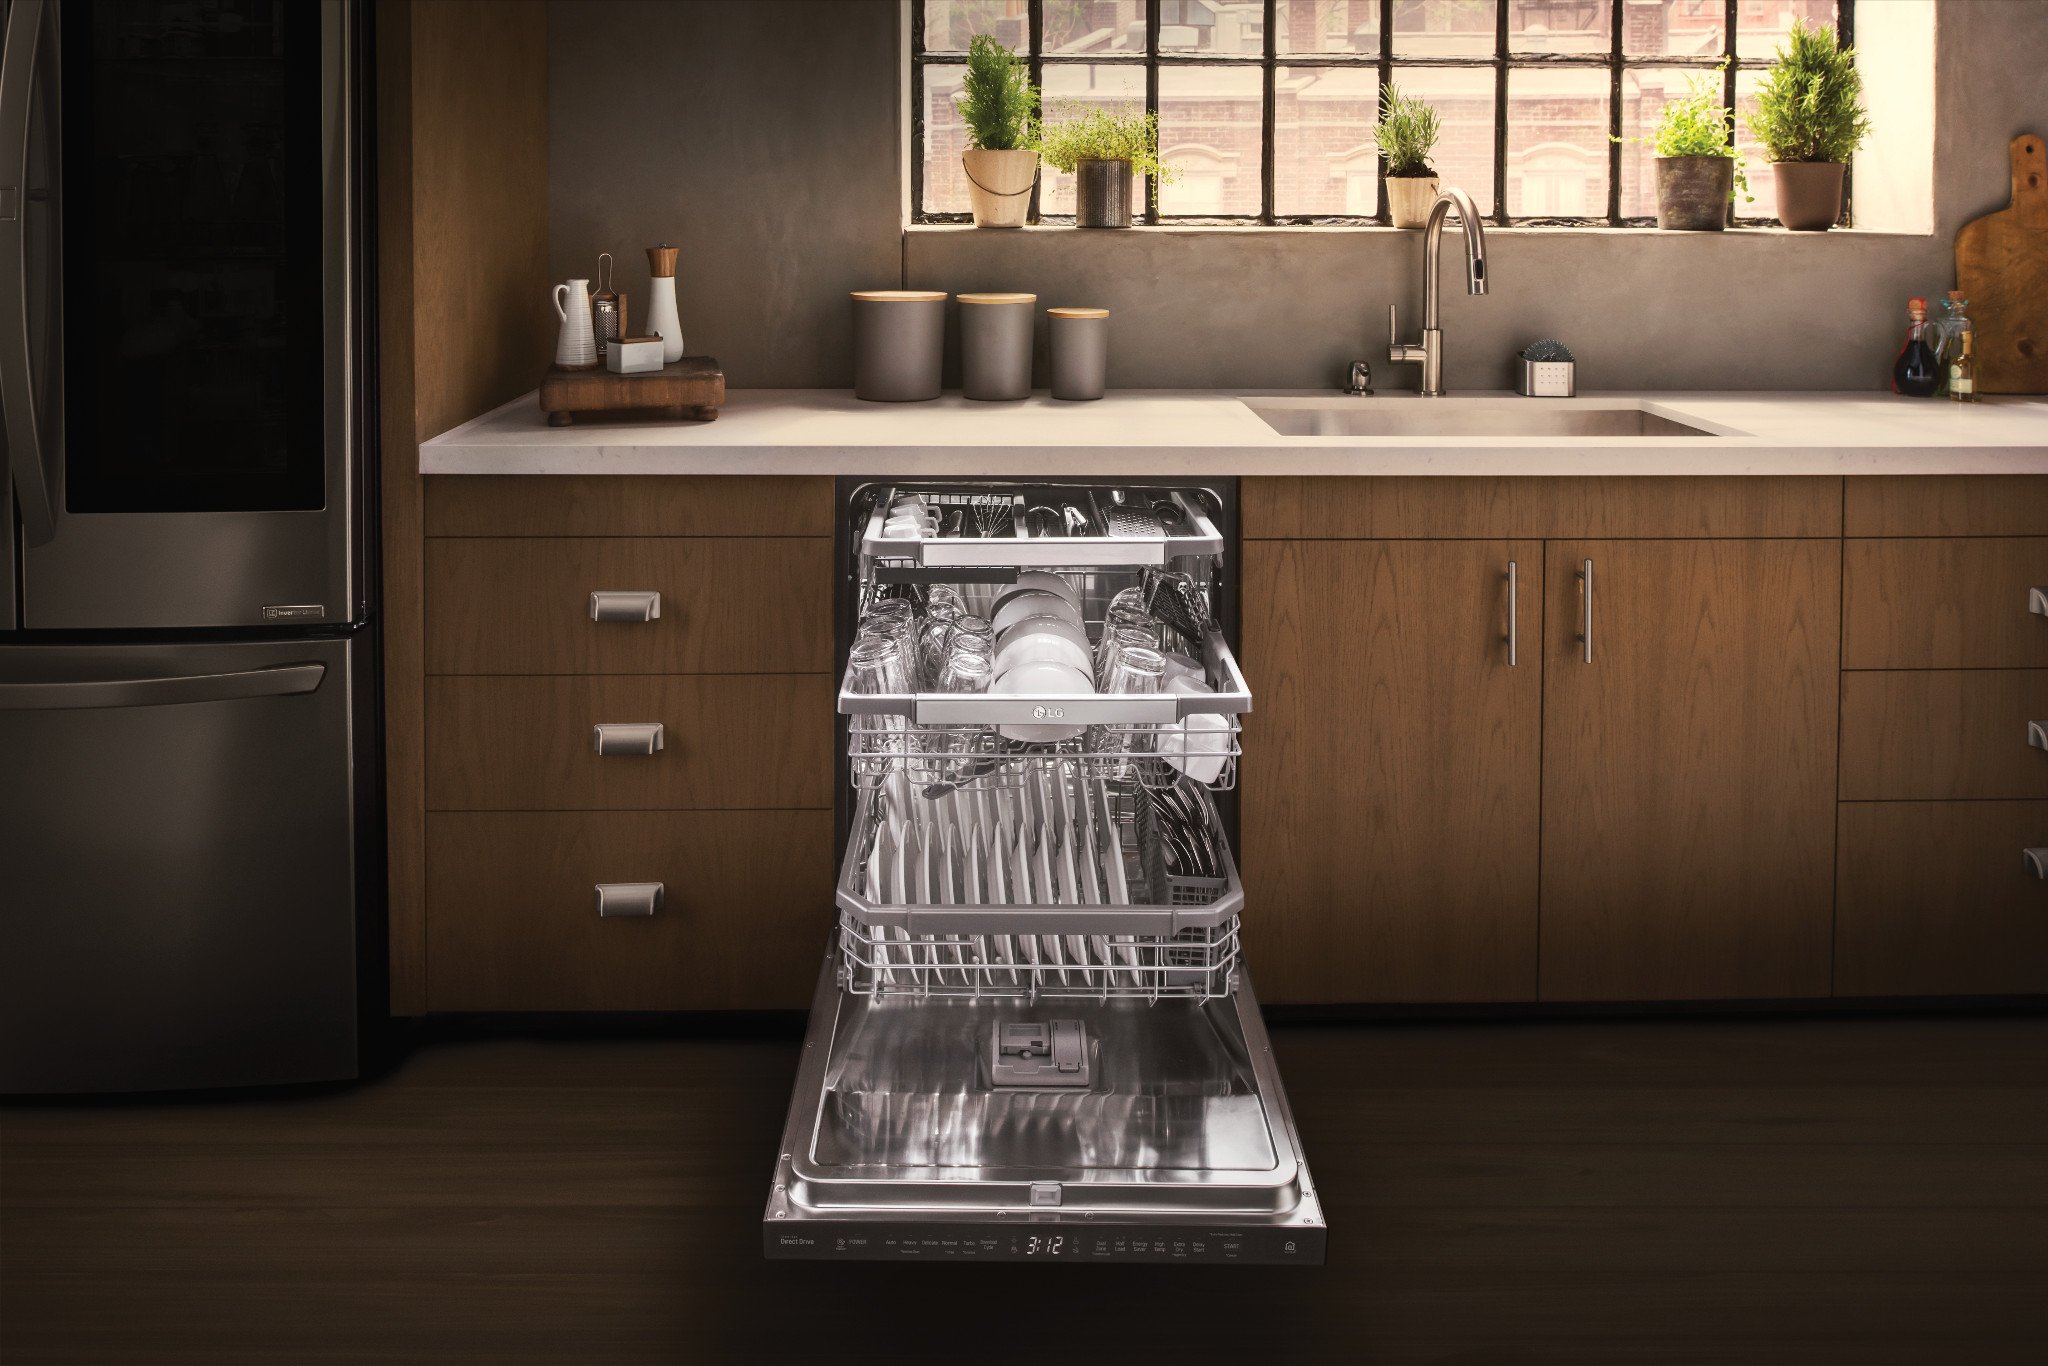 Посудомоечная машина рейтинг цена качество 60. Kitchenaid 24 Dishwasher. Посудомоечная машина на столешницу. Посудомоечная машина в интерьере. Посудомоечная машина в интерьере кухни.